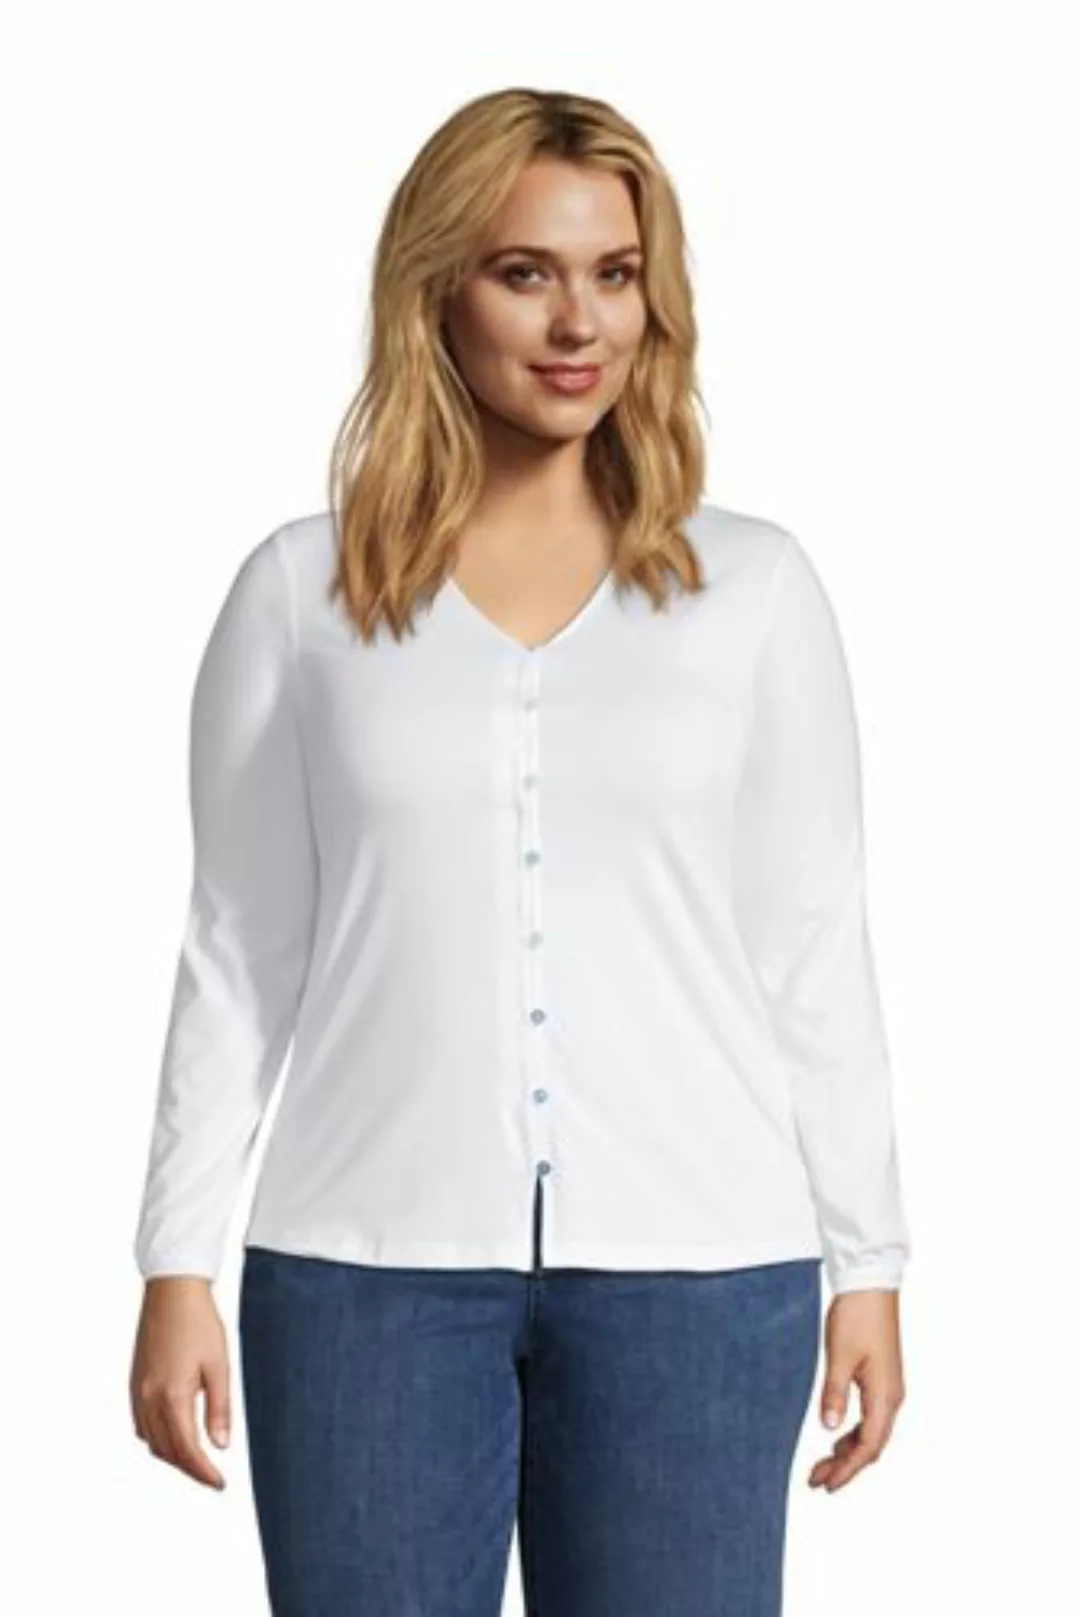 Bluse aus Baumwoll/Modalmix in großen Größen, Damen, Größe: 56-58 Plusgröße günstig online kaufen